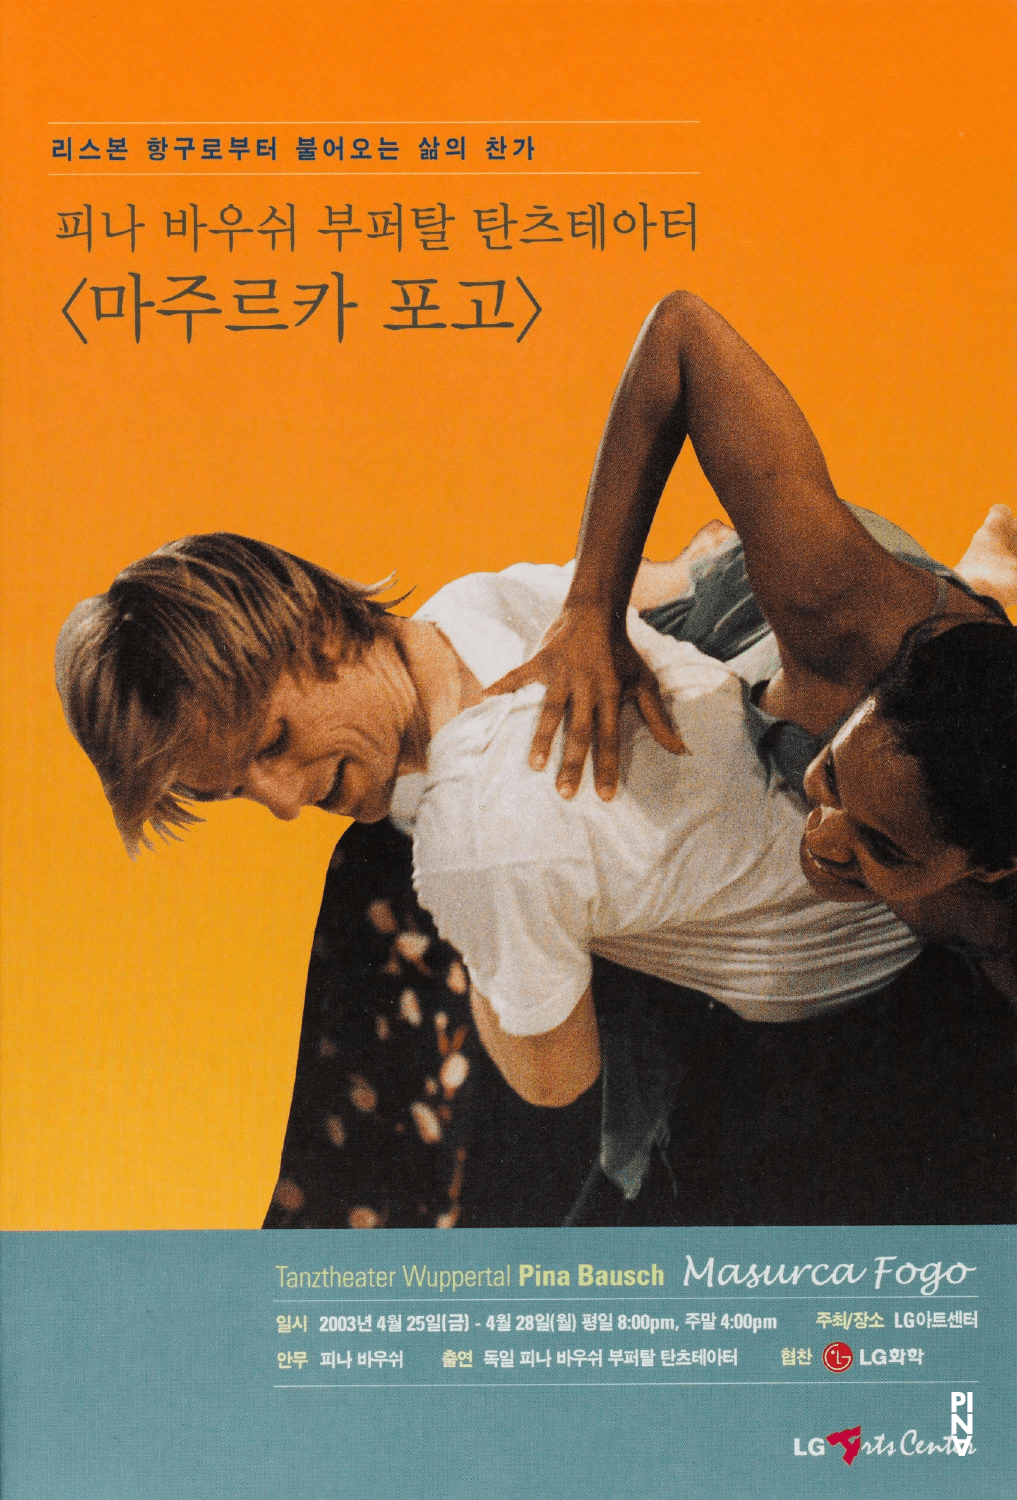 Programmheft zu „Masurca Fogo“ von Pina Bausch mit Tanztheater Wuppertal in Seoul, 25.04.2003–28.04.2003